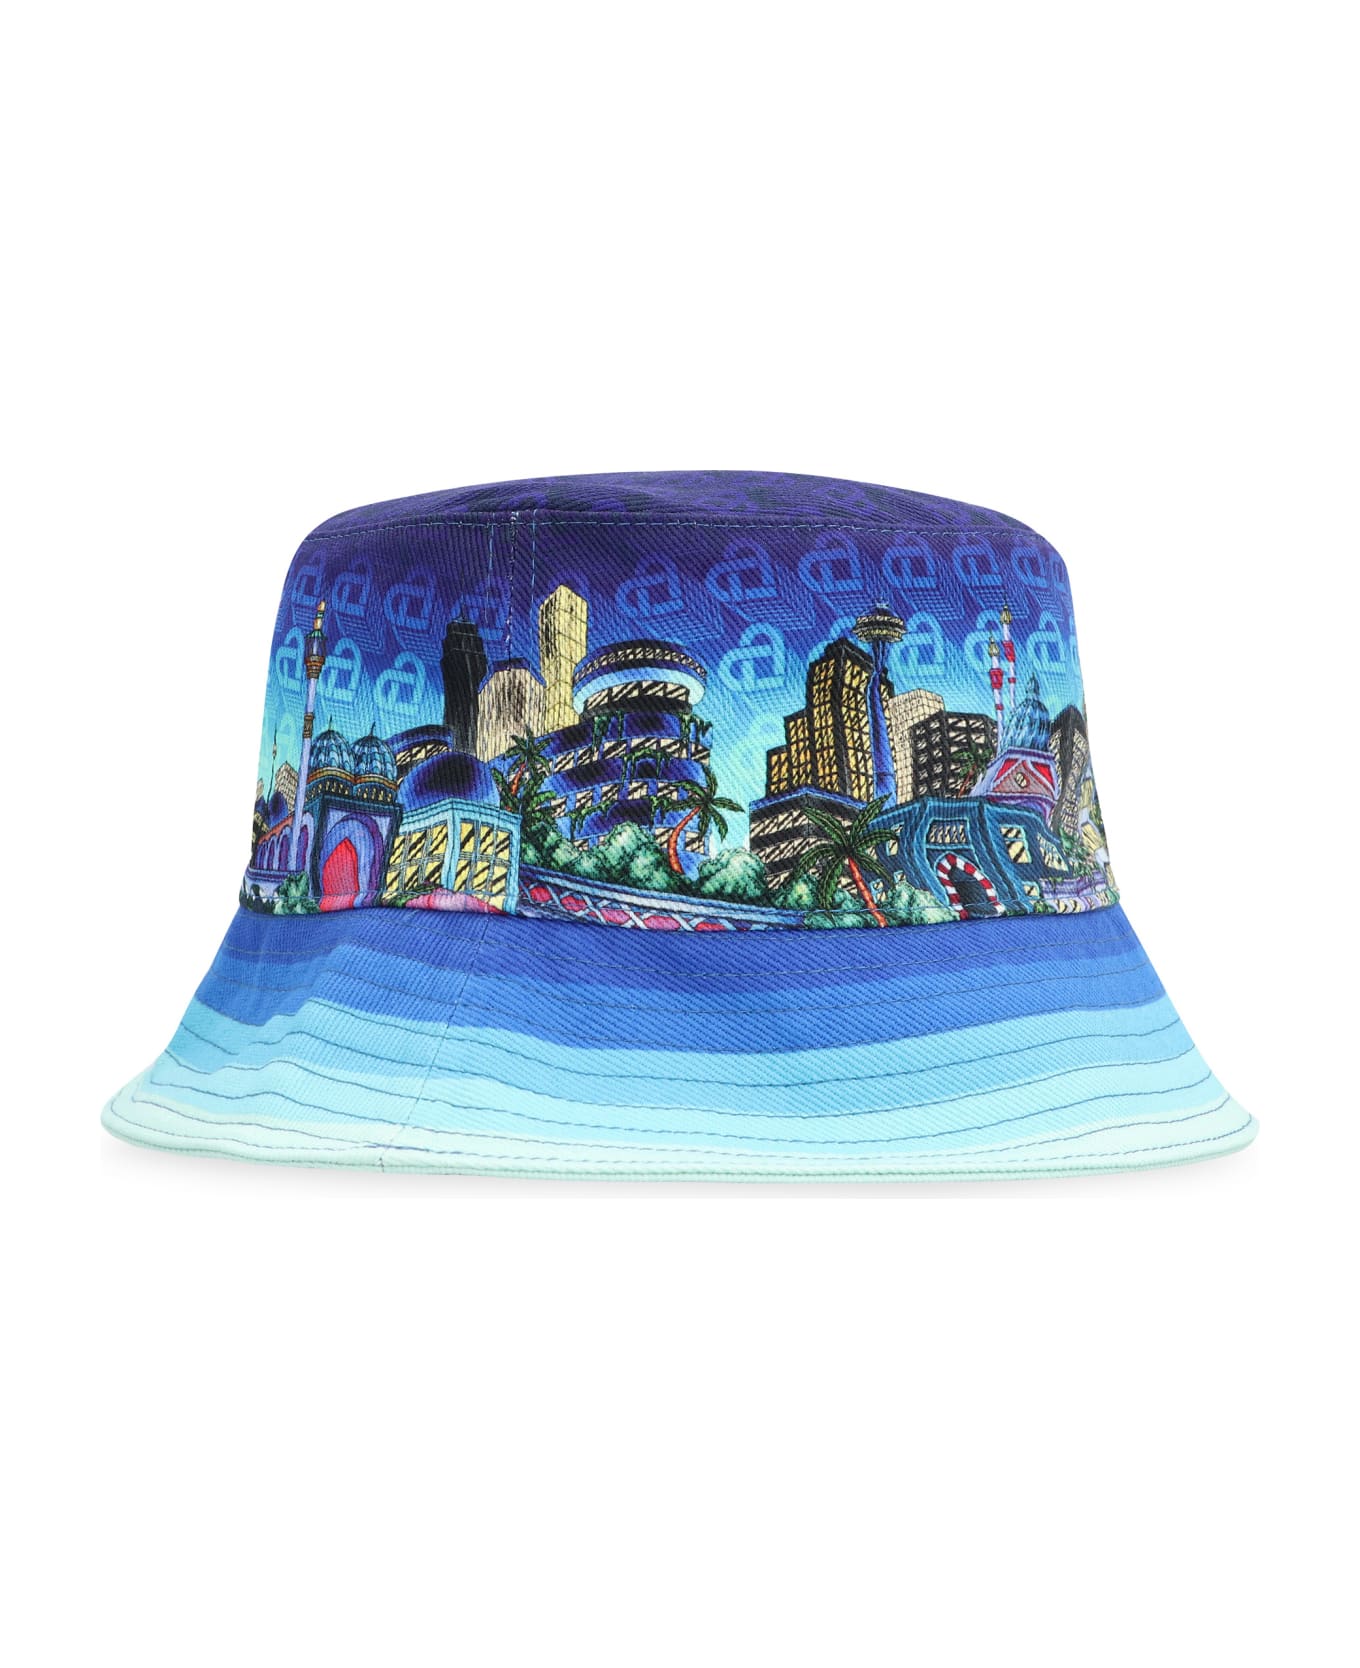 Casablanca Bucket Hat - blue 帽子